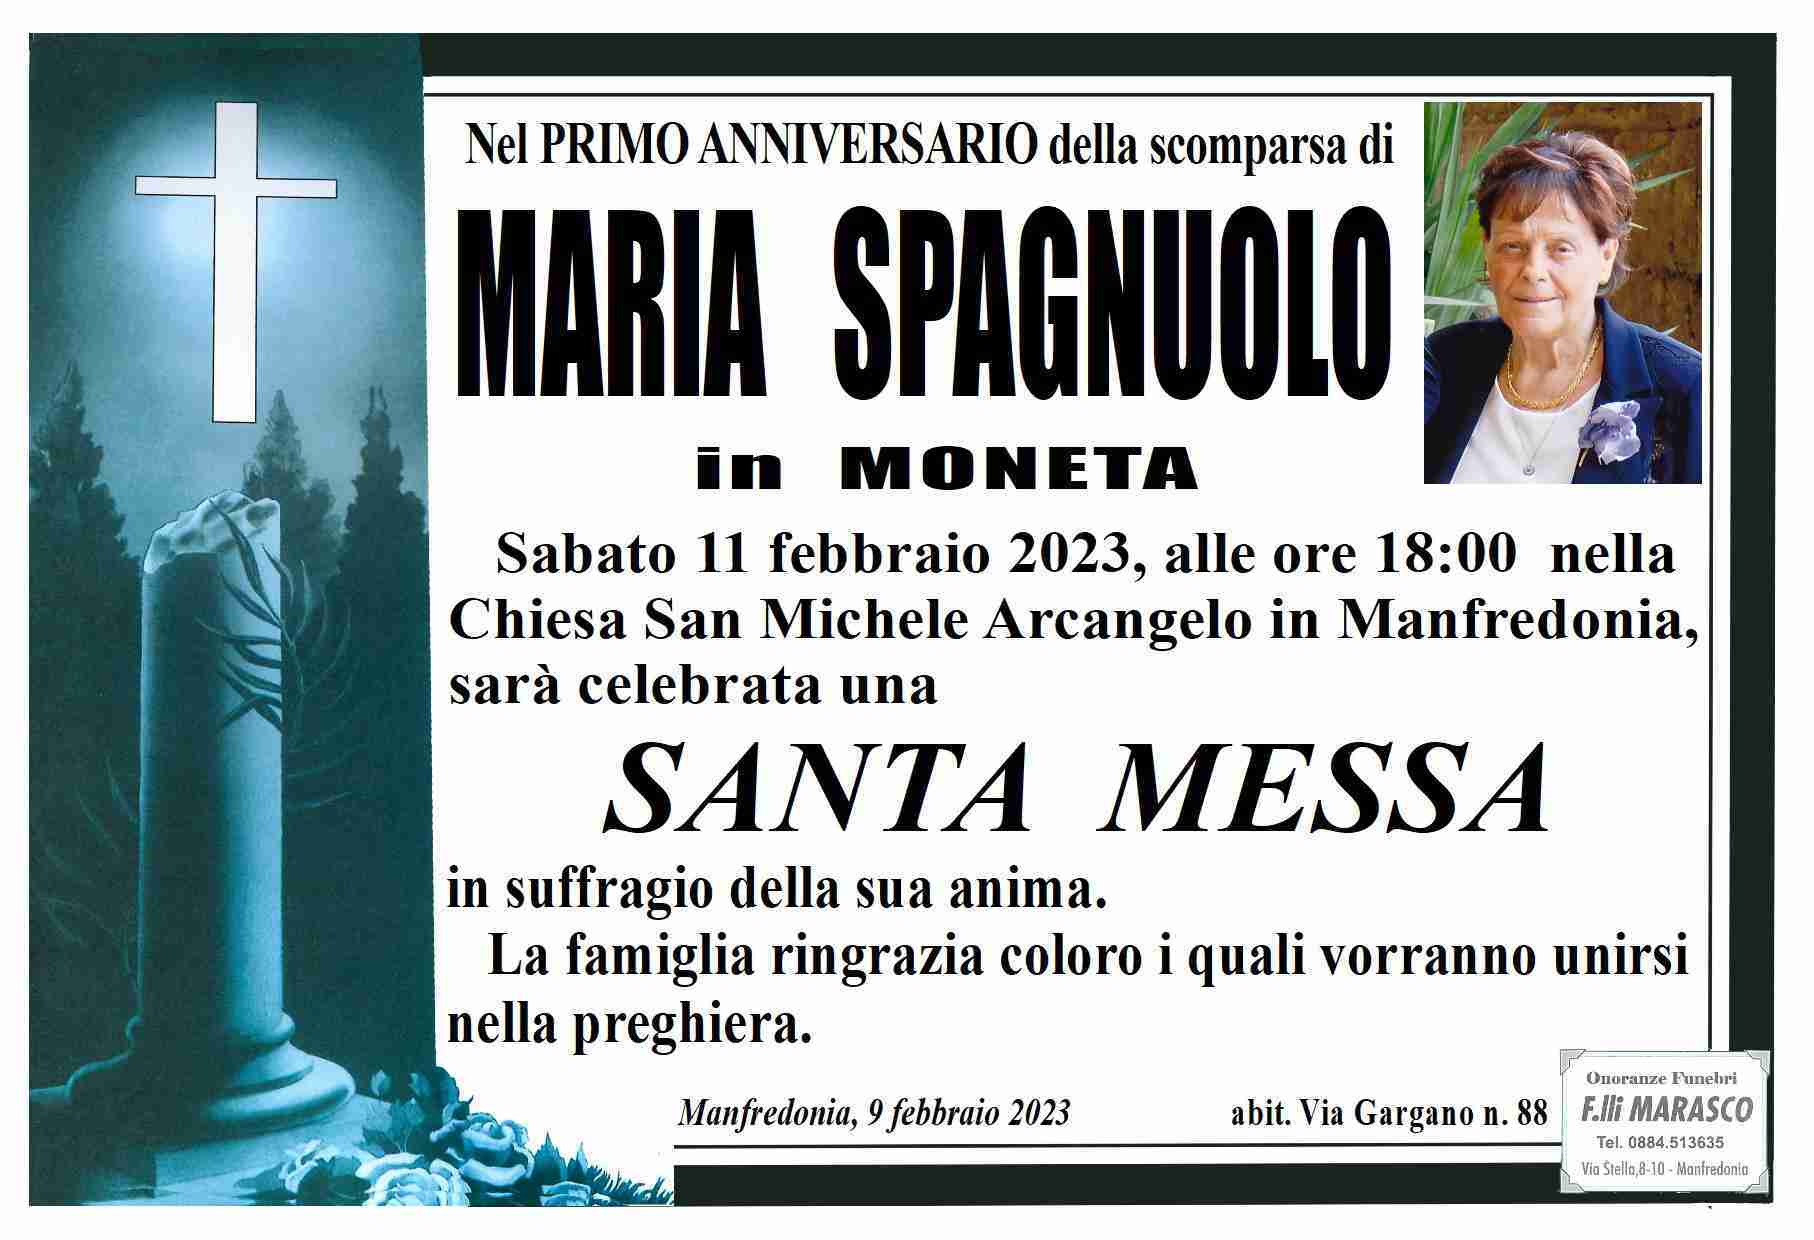 Maria Spagnuolo